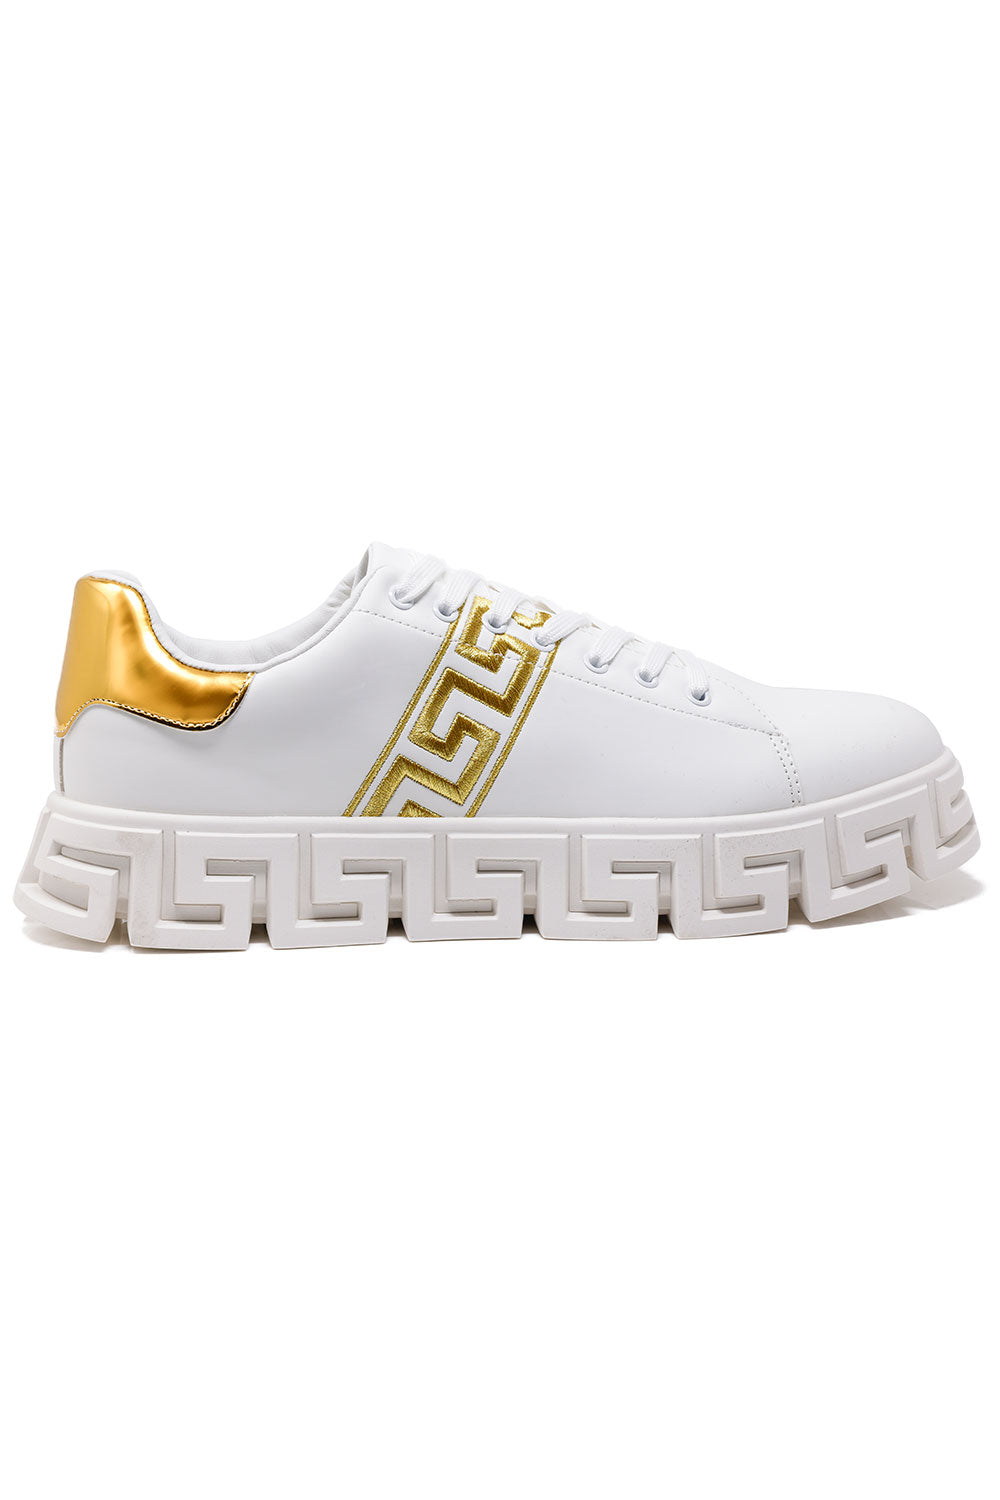 Barabas Men's Greek Key Sole Pattern Premium Sneakers 4SK07 Gold